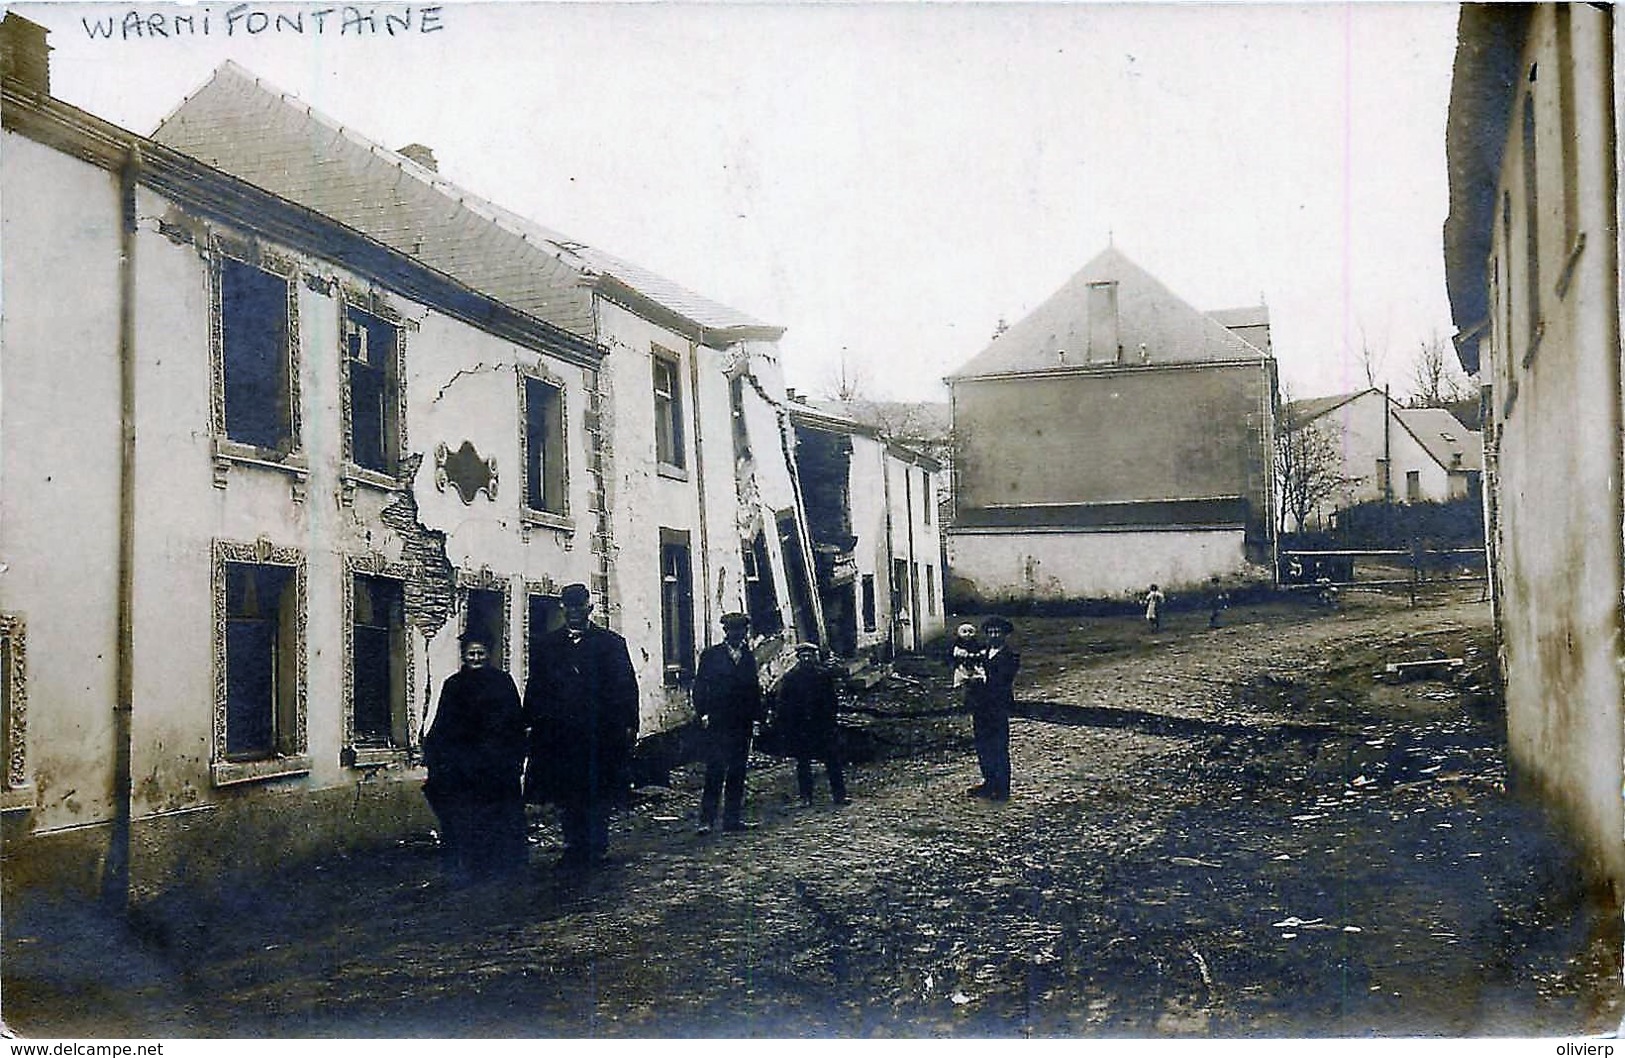 Belgique - Neufchâteau - Warmifontaine - Affaissement Du Sol - 11 Mars 1912 - Neufchateau